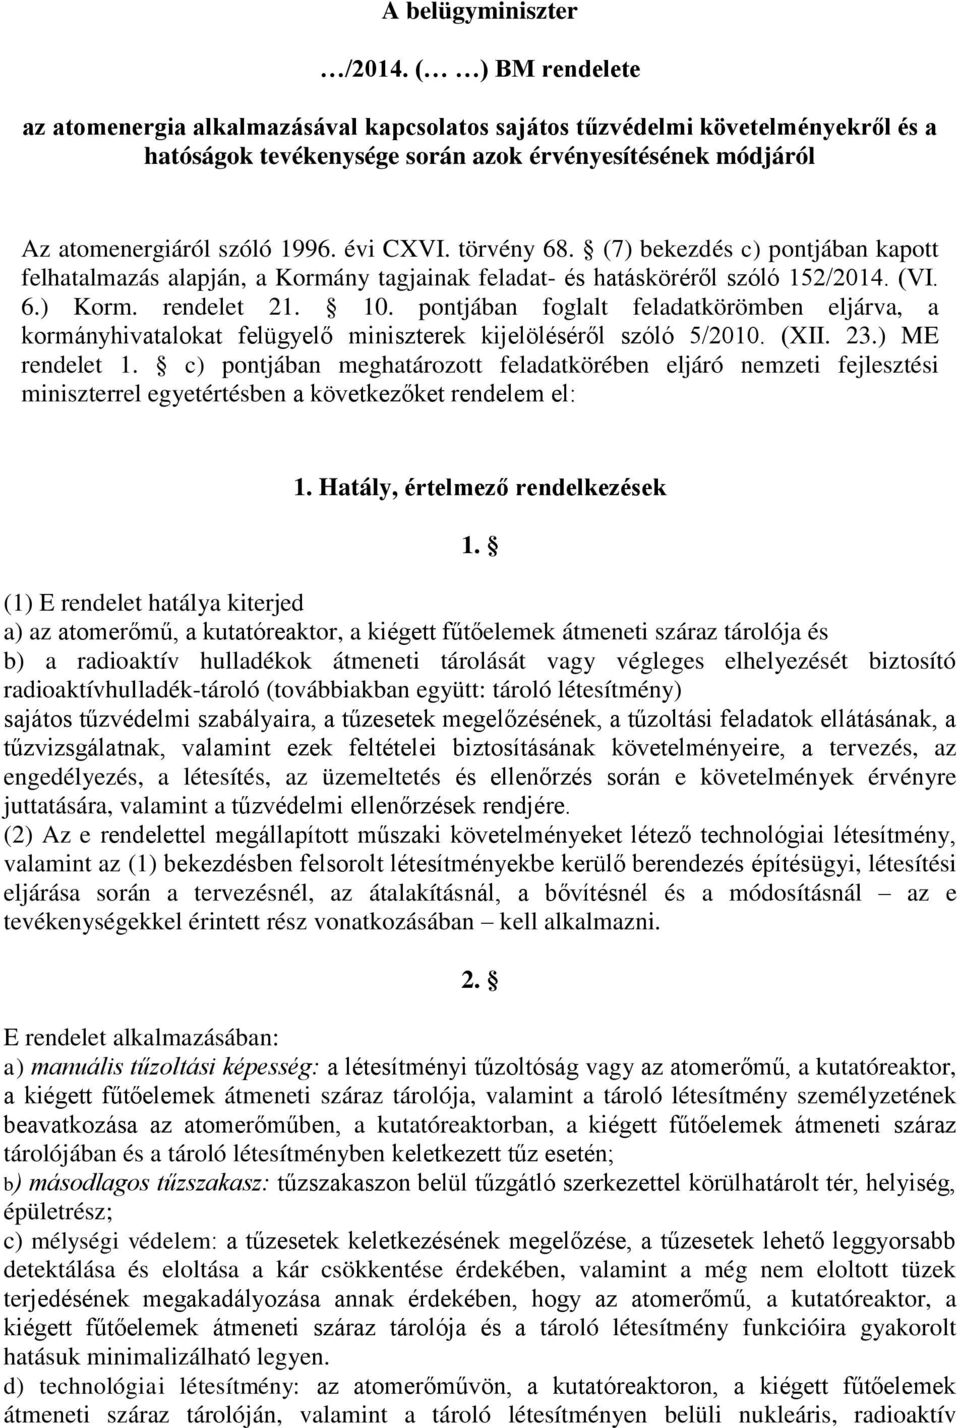 törvény 68. (7) bekezdés c) pontjában kapott felhatalmazás alapján, a Kormány tagjainak feladat- és hatásköréről szóló 152/2014. (VI. 6.) Korm. rendelet 21. 10.